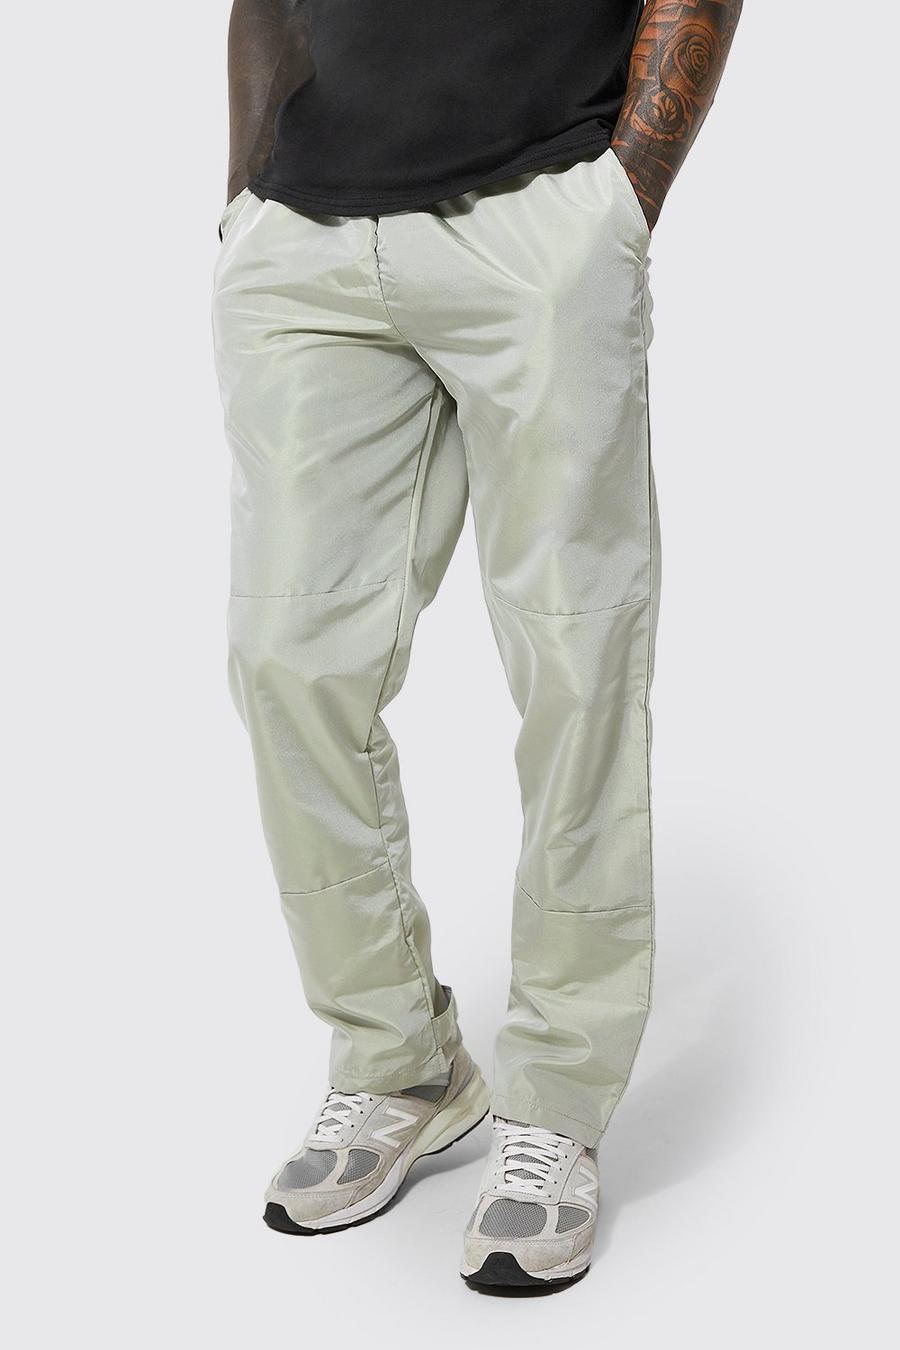 אפור מכנסי דגמ"ח מחליפי צבעים בגזרה משוחררת עם שרוכי כיווץ ארוכים image number 1